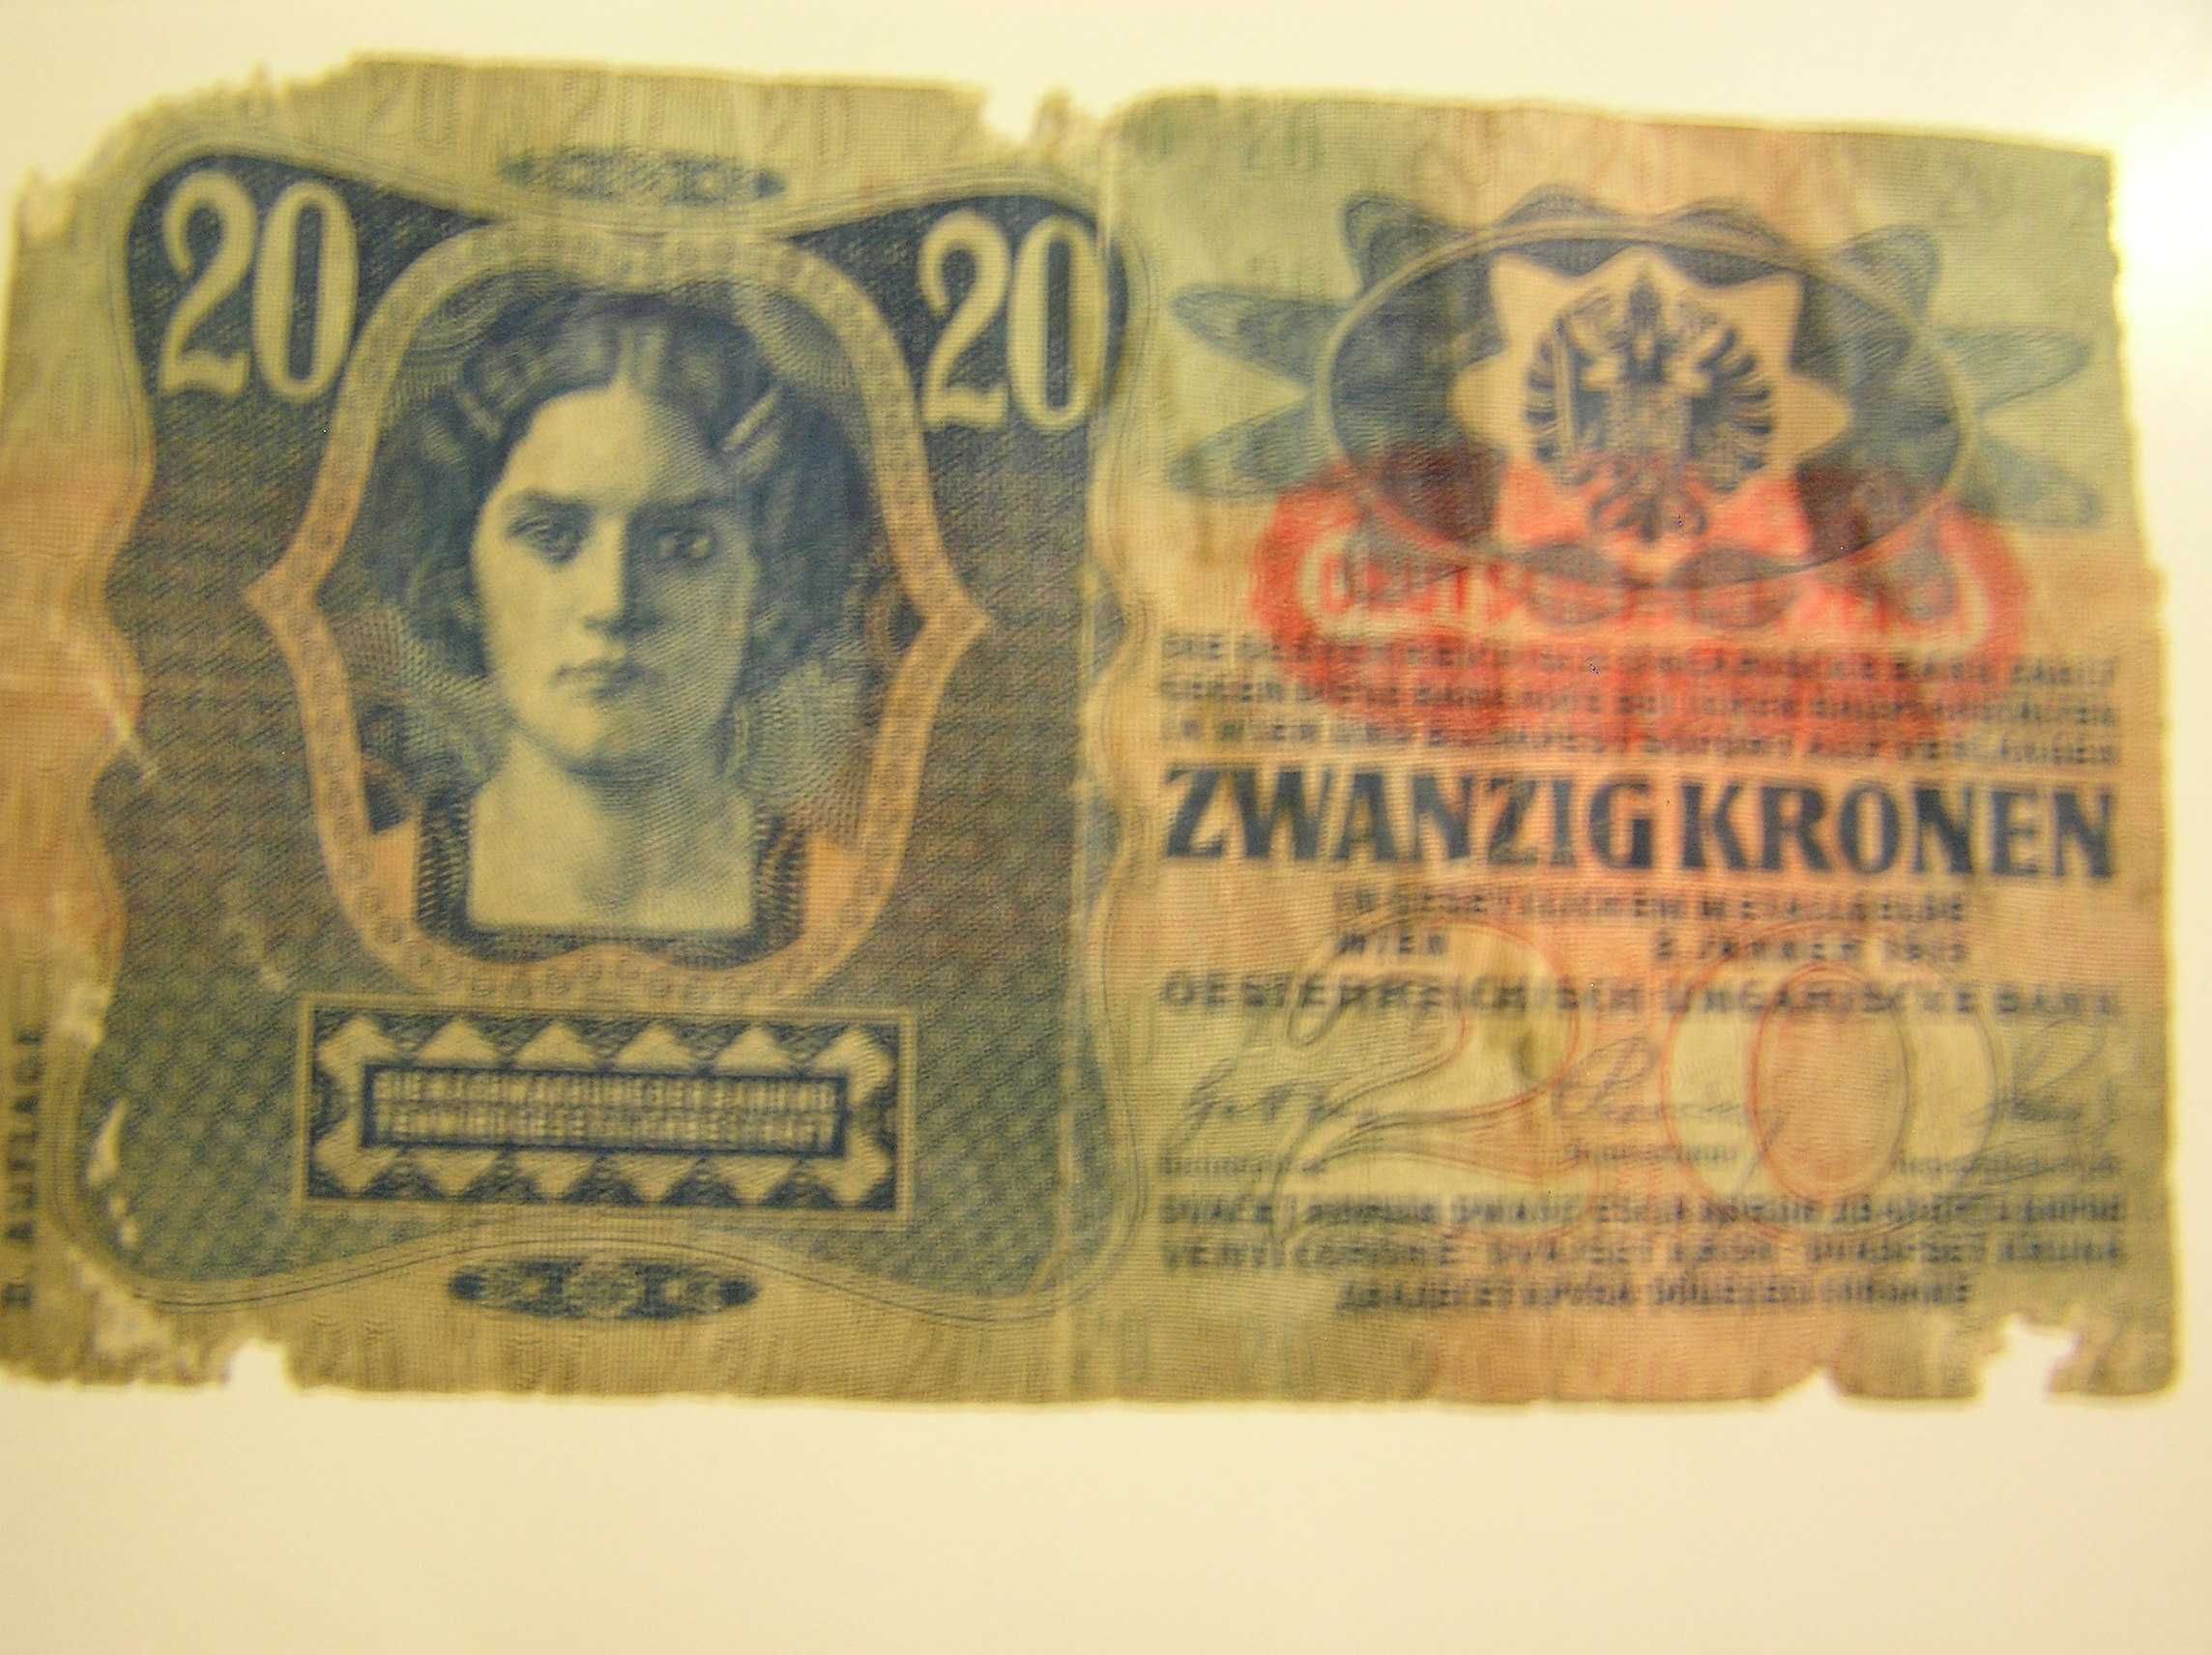 Банкноты разных стран  в прекрасном состоянии  недорого